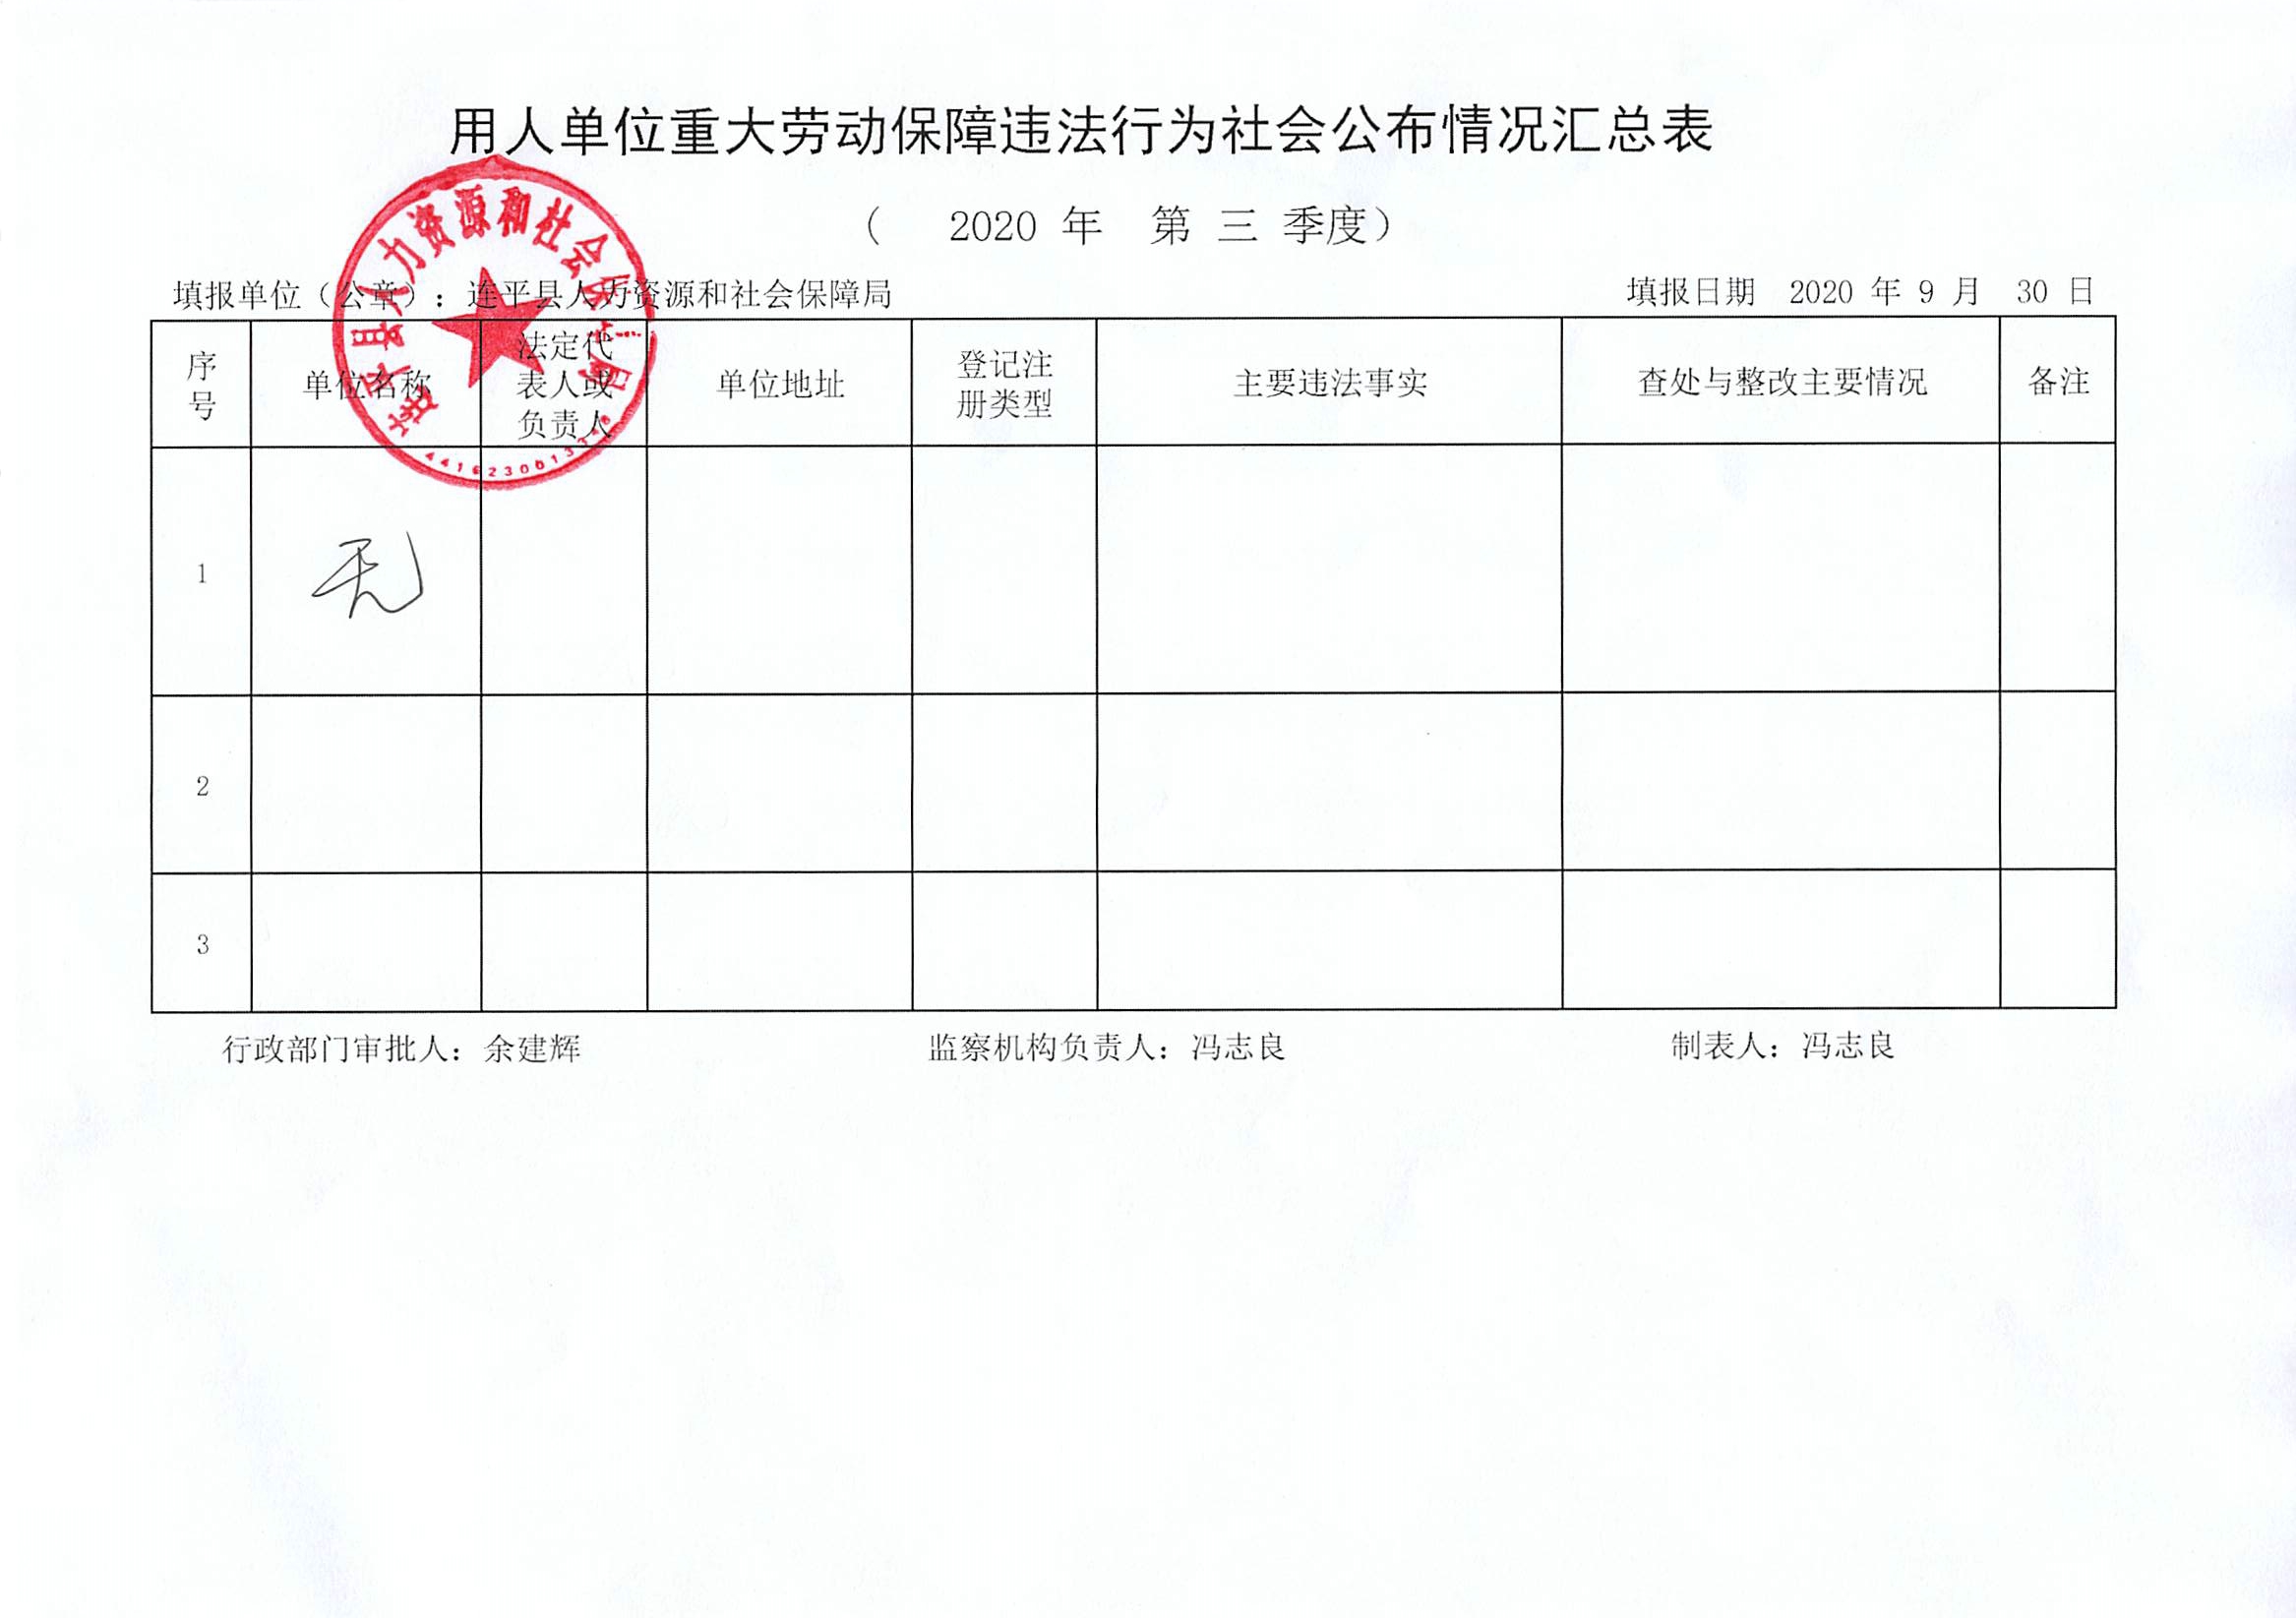 连平县用人单位重大劳动保障违法行为社会公布信息表（第三季度）.jpg